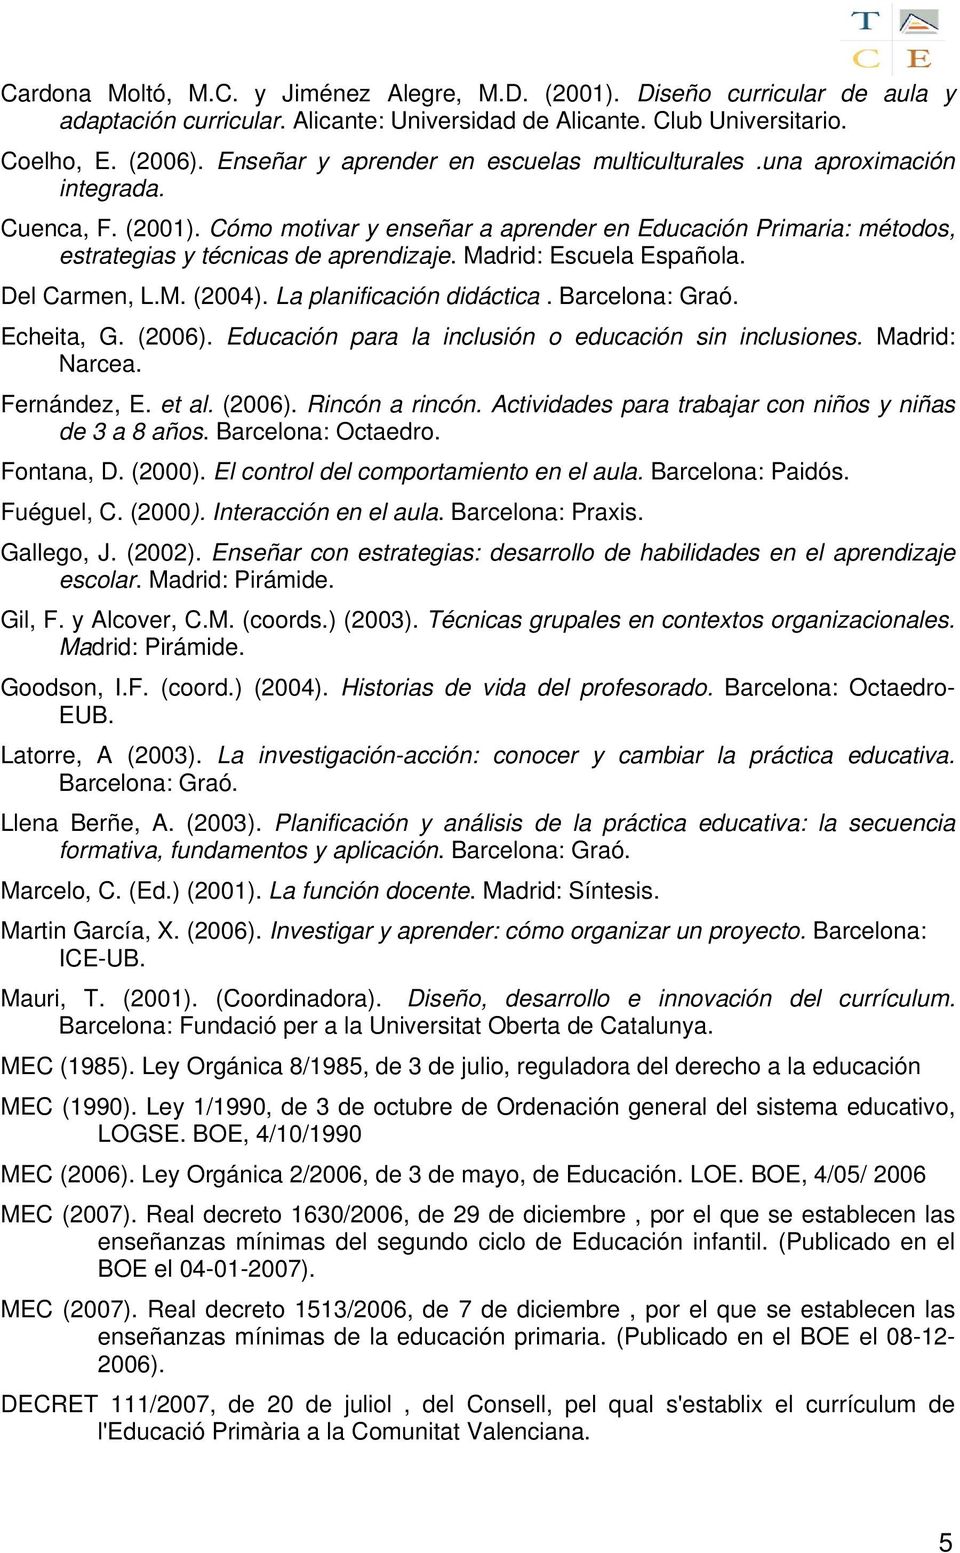 Madrid: Escuela Española. Del Carmen, L.M. (2004). La planificación didáctica. Barcelona: Graó. Echeita, G. (2006). Educación para la inclusión o educación sin inclusiones. Madrid: Narcea.